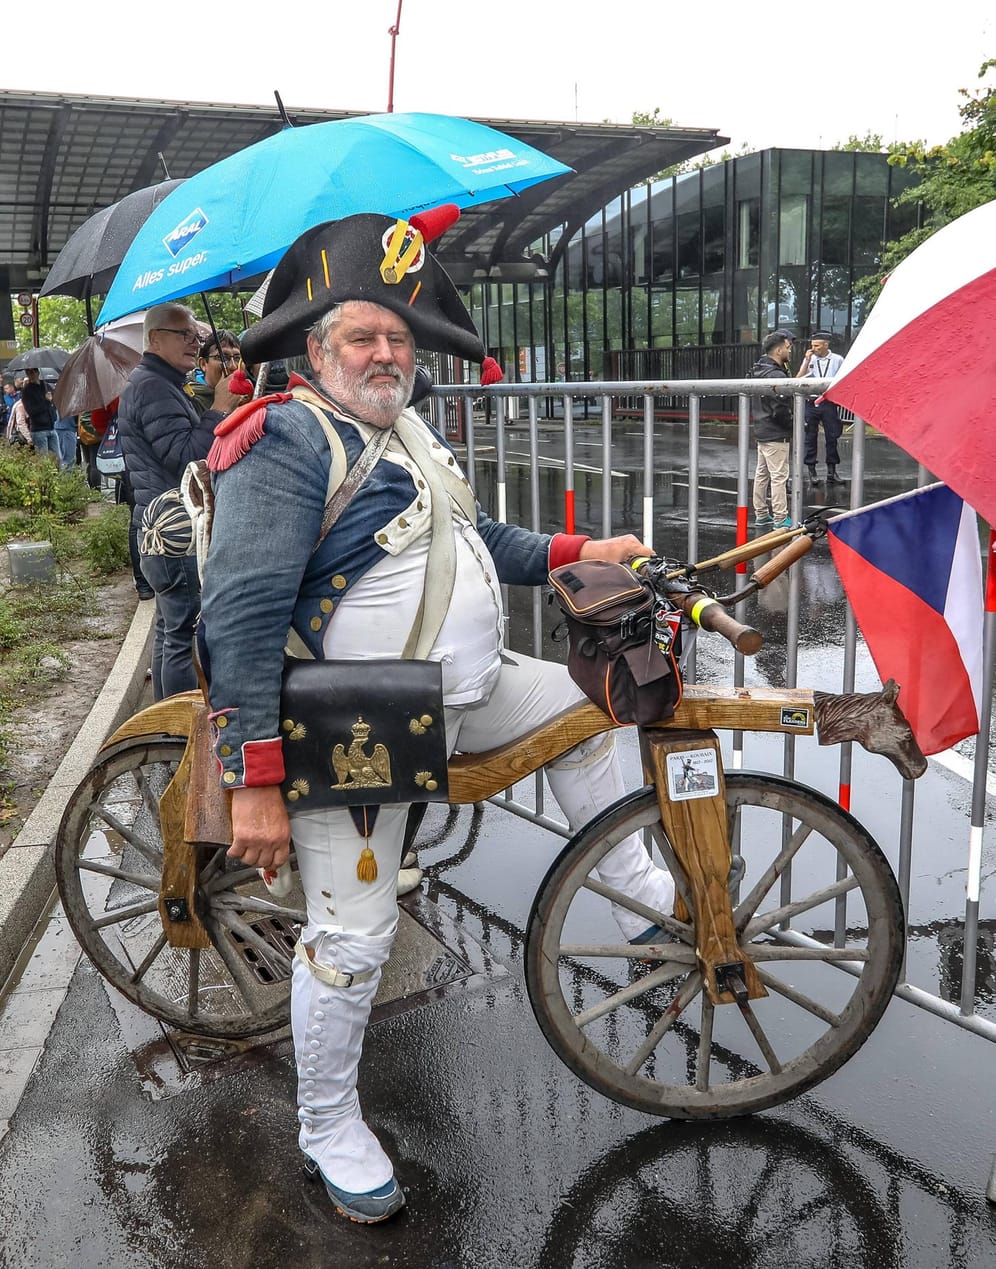 Ein tschechischer Fan schaut den Prolog der Tour de France auf einem historischen Fahrrad.